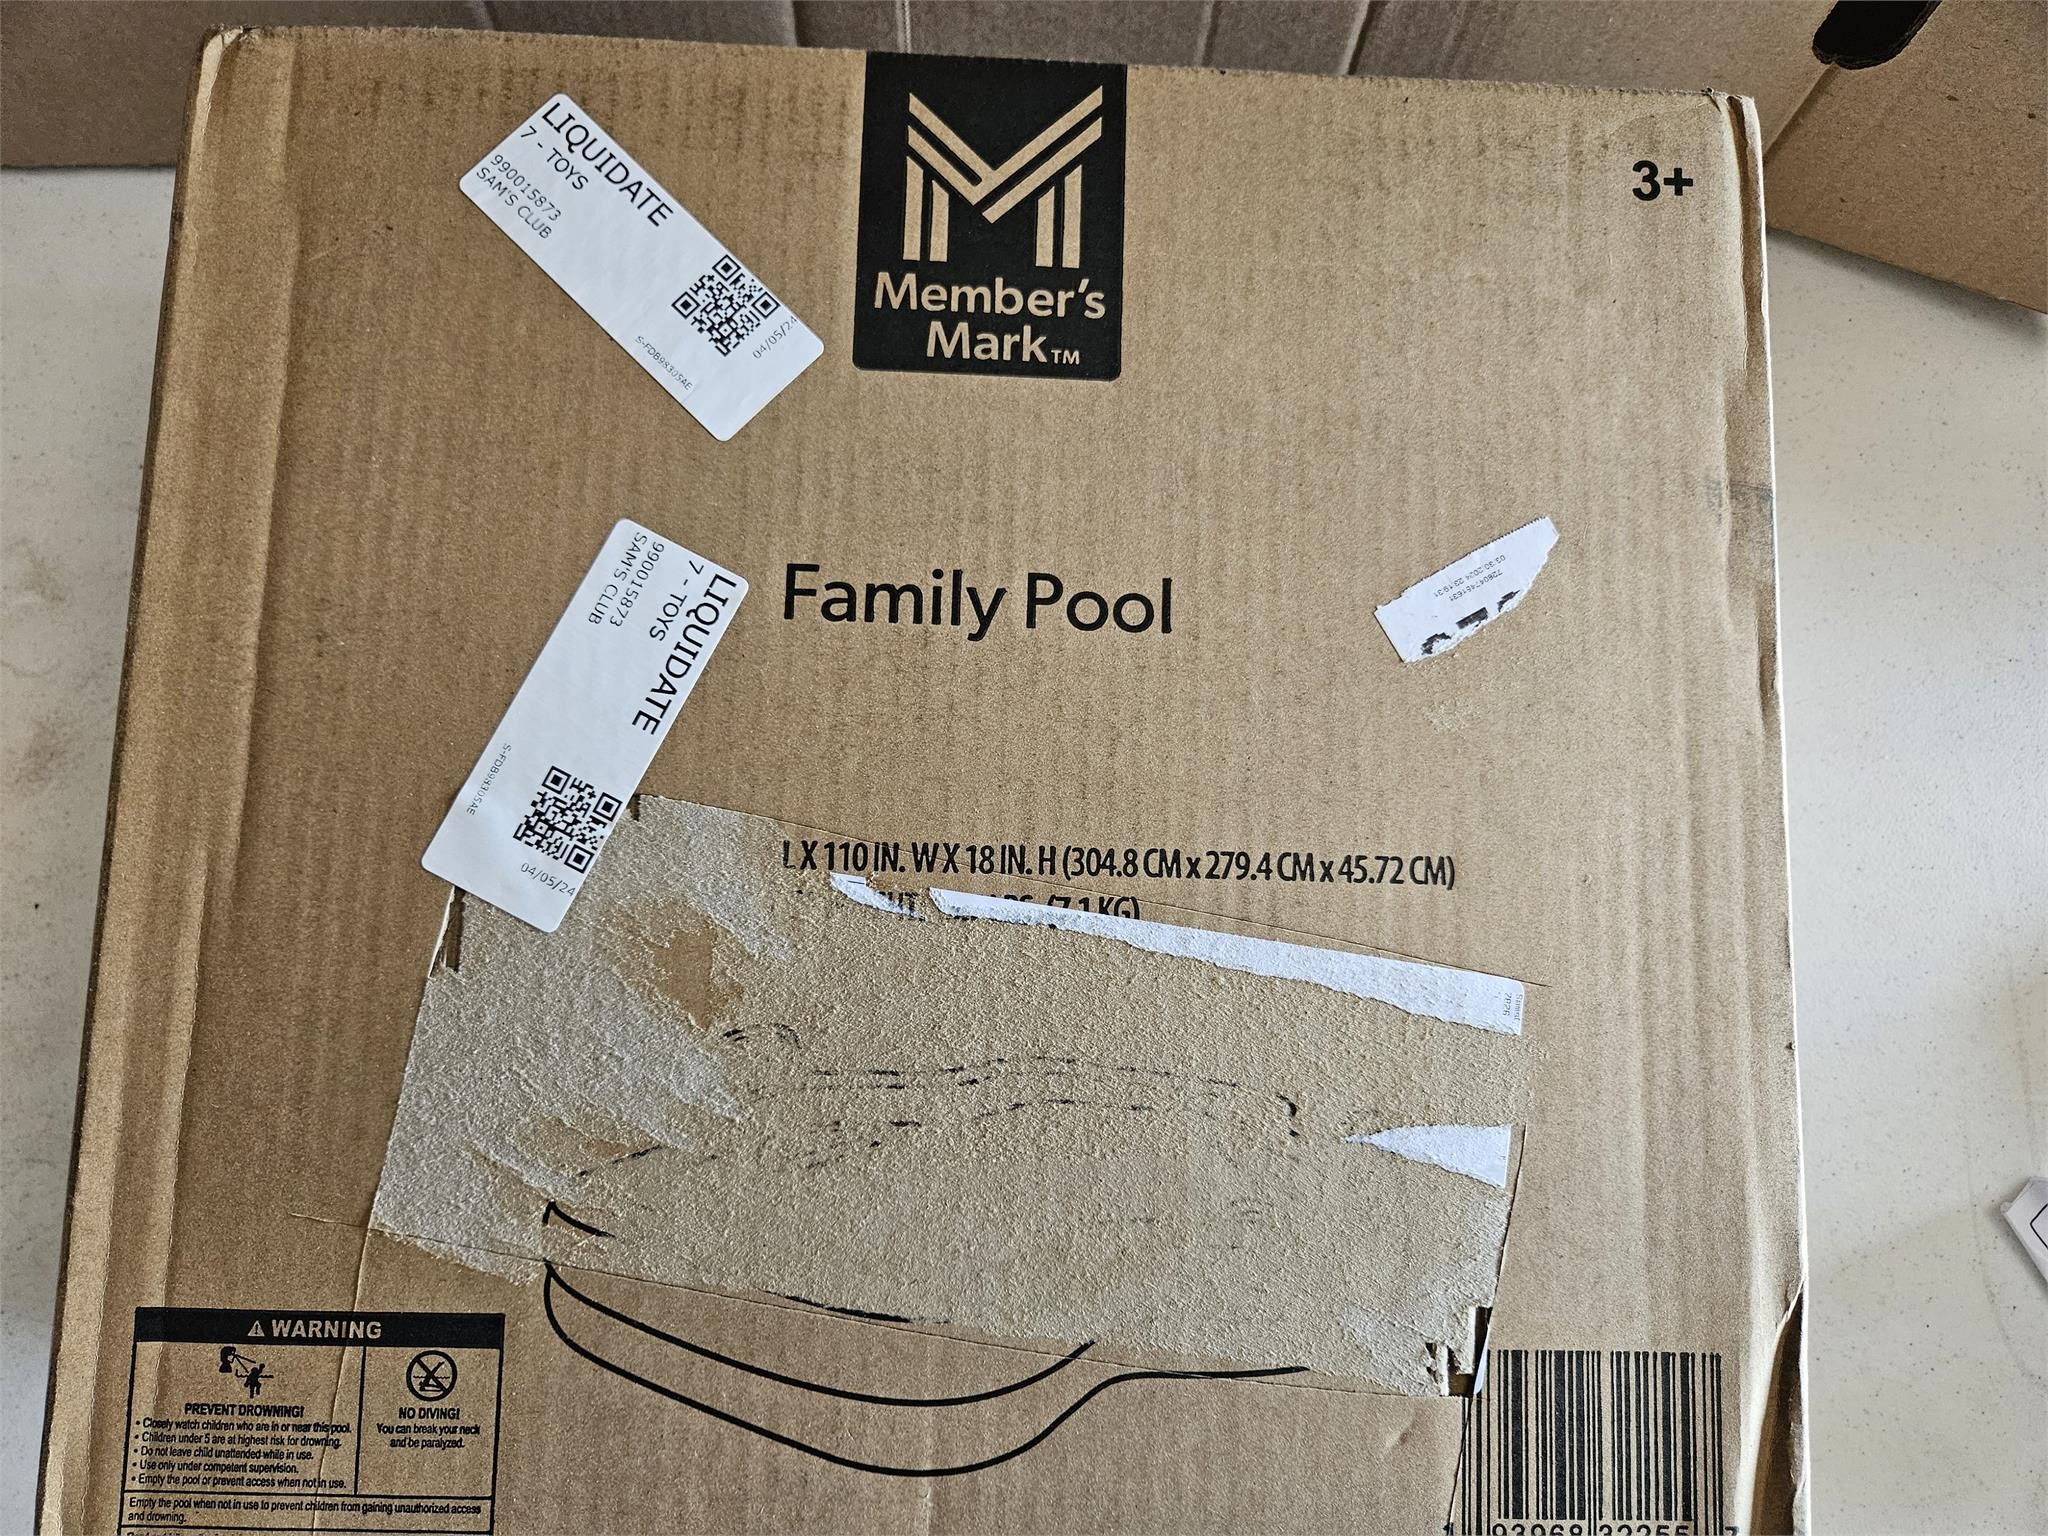 MEMBERS MARK Family Pool